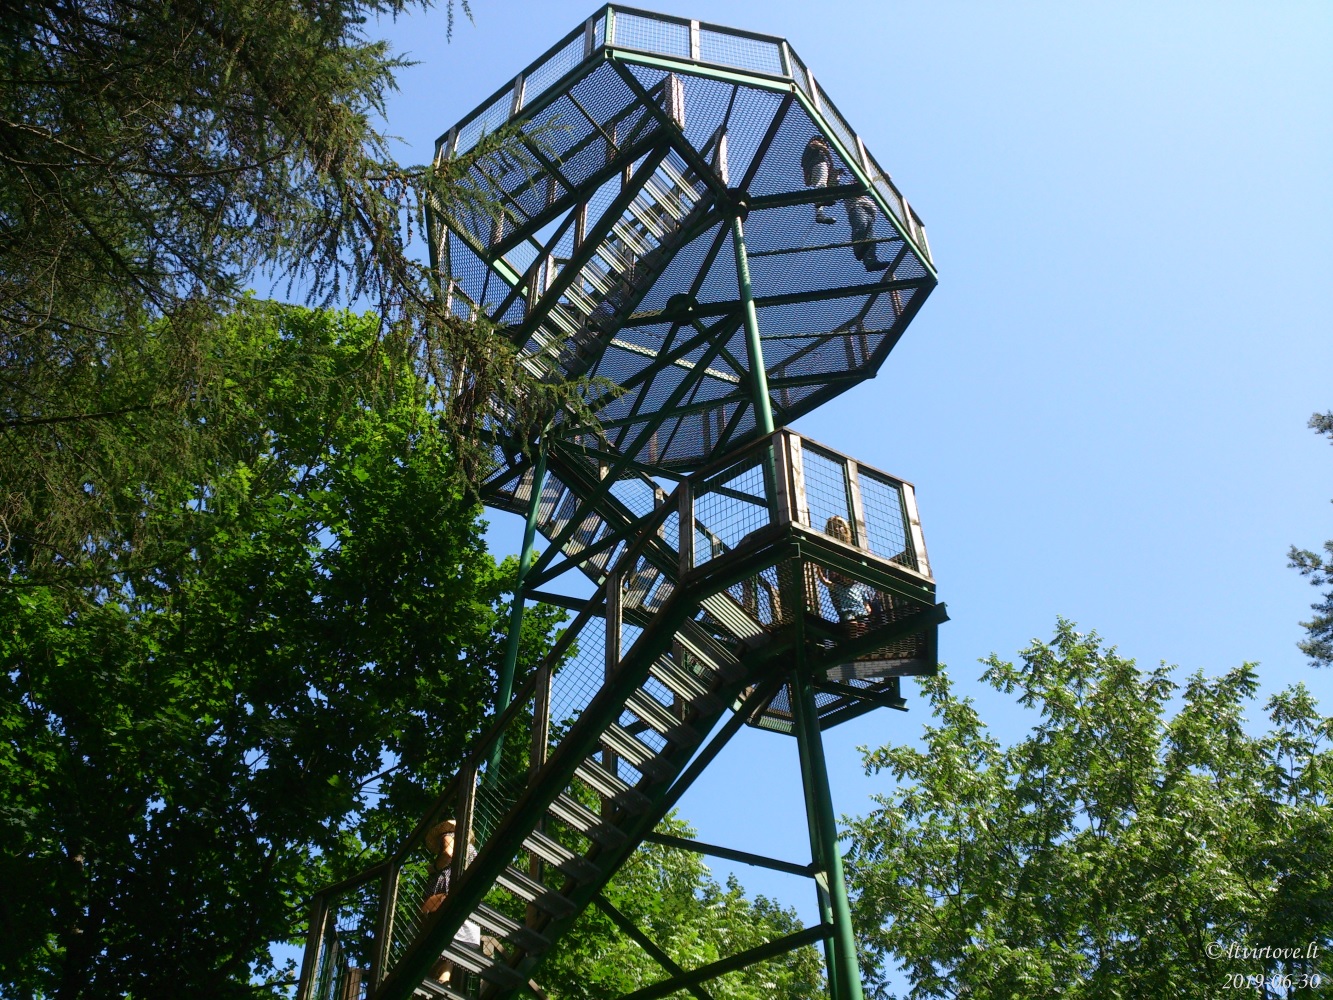 Rumšiškių apžvalgos bokštas :: Apžvalgos bokštai aukštaitijoje | Autorius: Laima